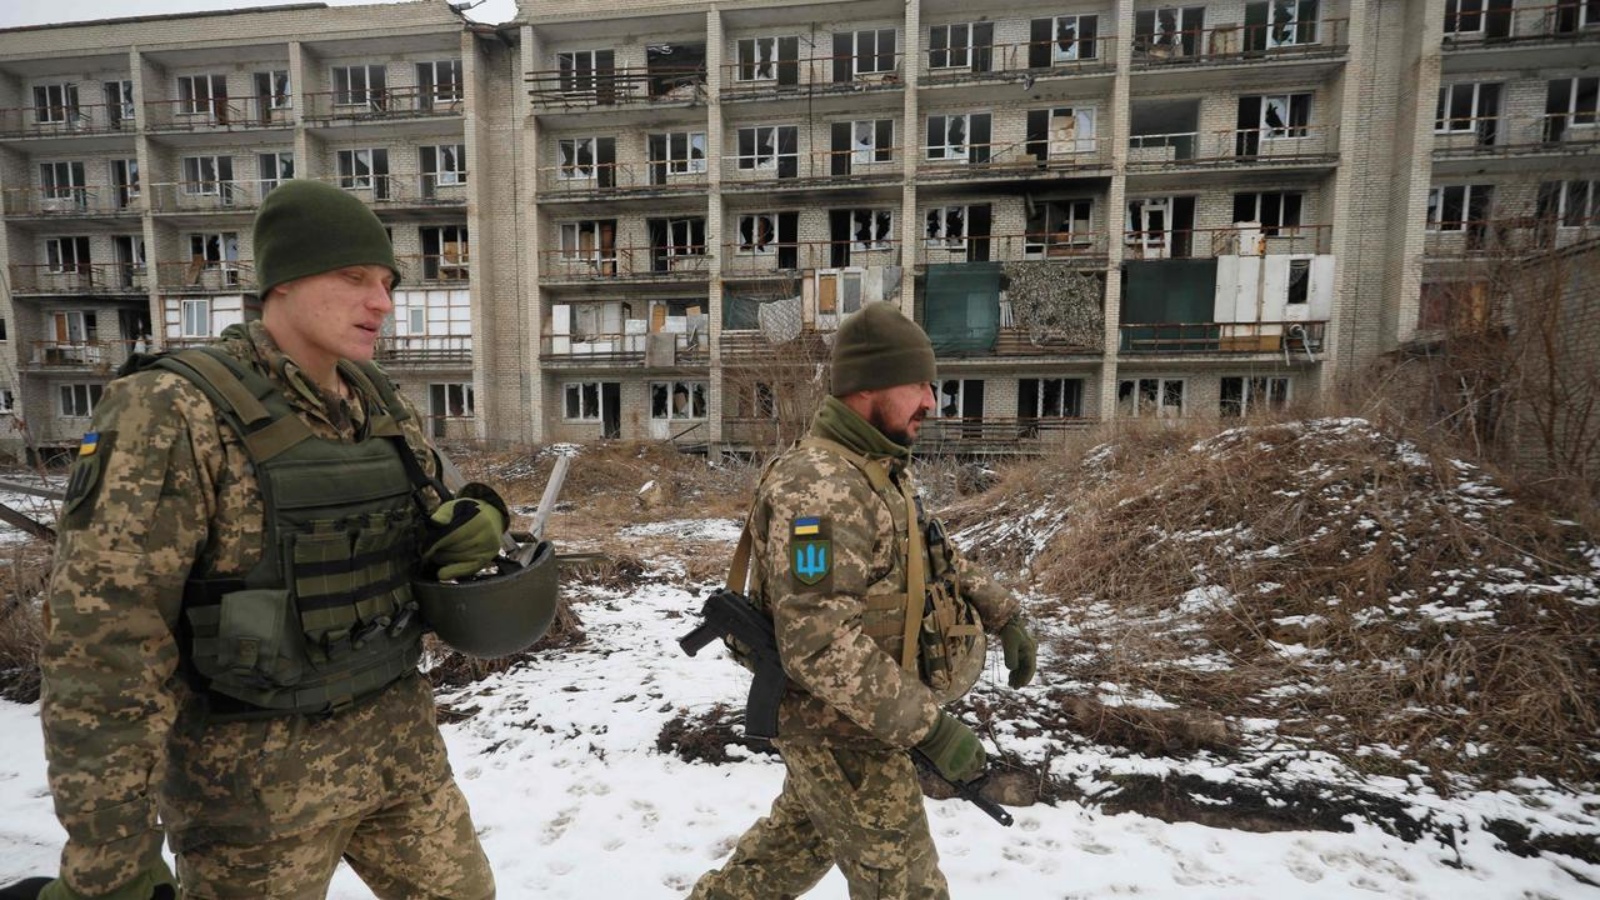 جنود من القوات العسكرية الأوكرانية يسيرون أمام المباني المتضررة على خط المواجهة مع الانفصاليين المدعومين من روسيا في ماريينكا بمنطقة دونيتسك في 7 فبراير 2022